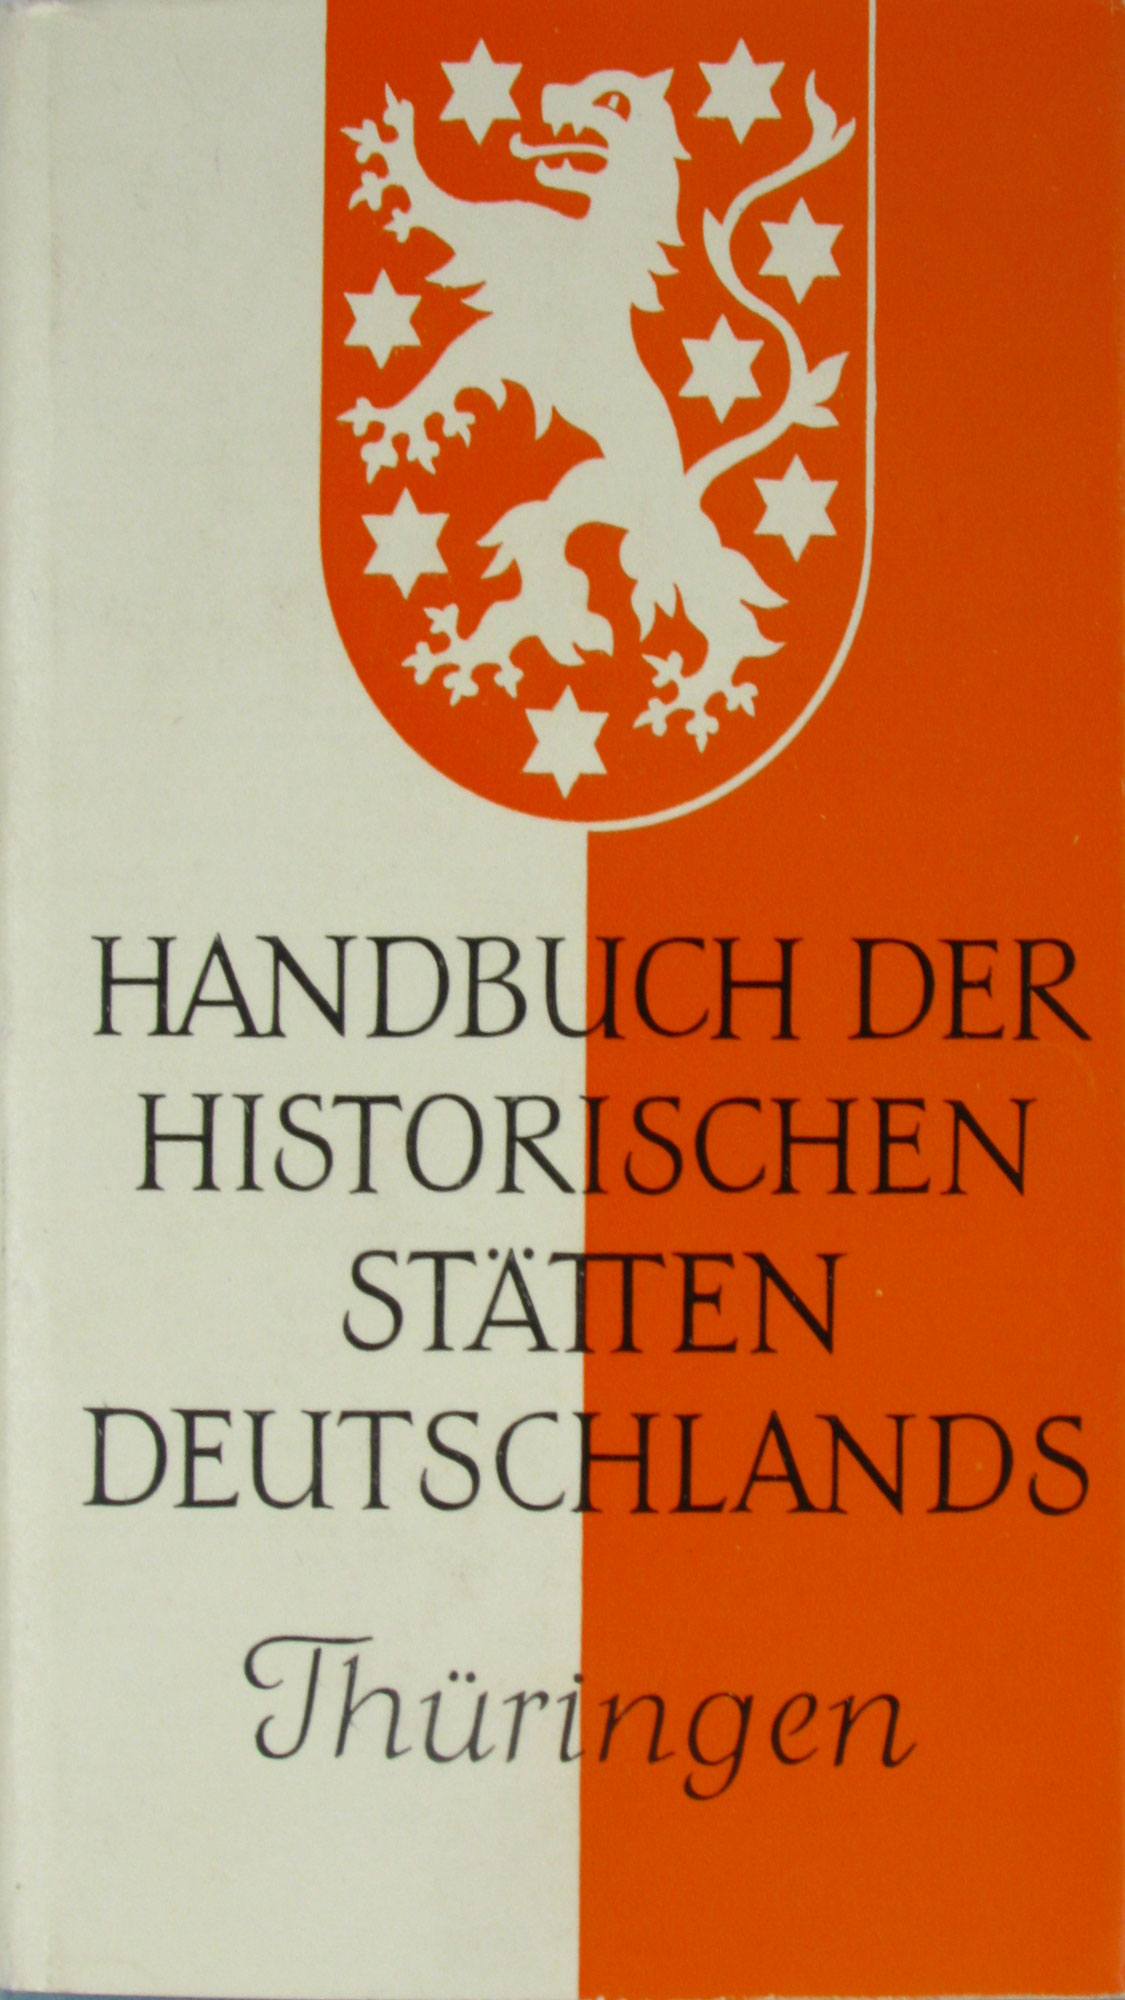 Patze, Hans:  Handbuch der historischen Stätten Deutschlands. Thüringen. Band 9. 